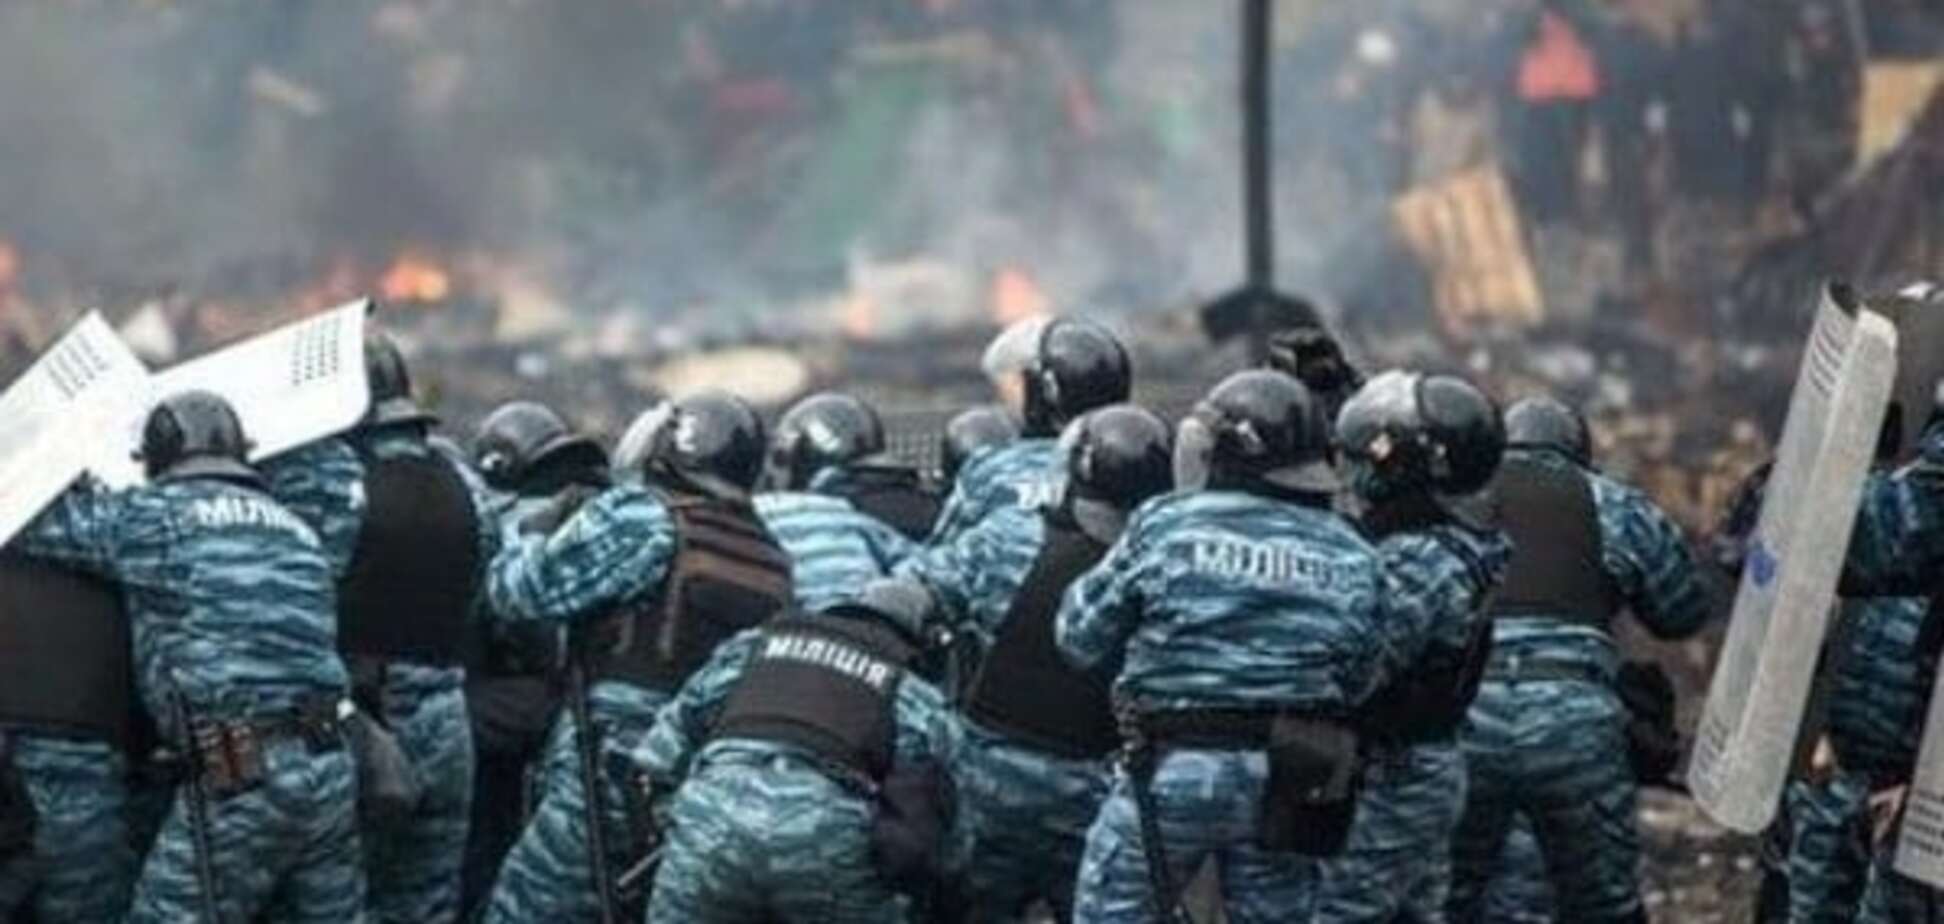 'Беркут' применял на Майдане поступившие из России спецсредства с вредными веществами - ГПУ